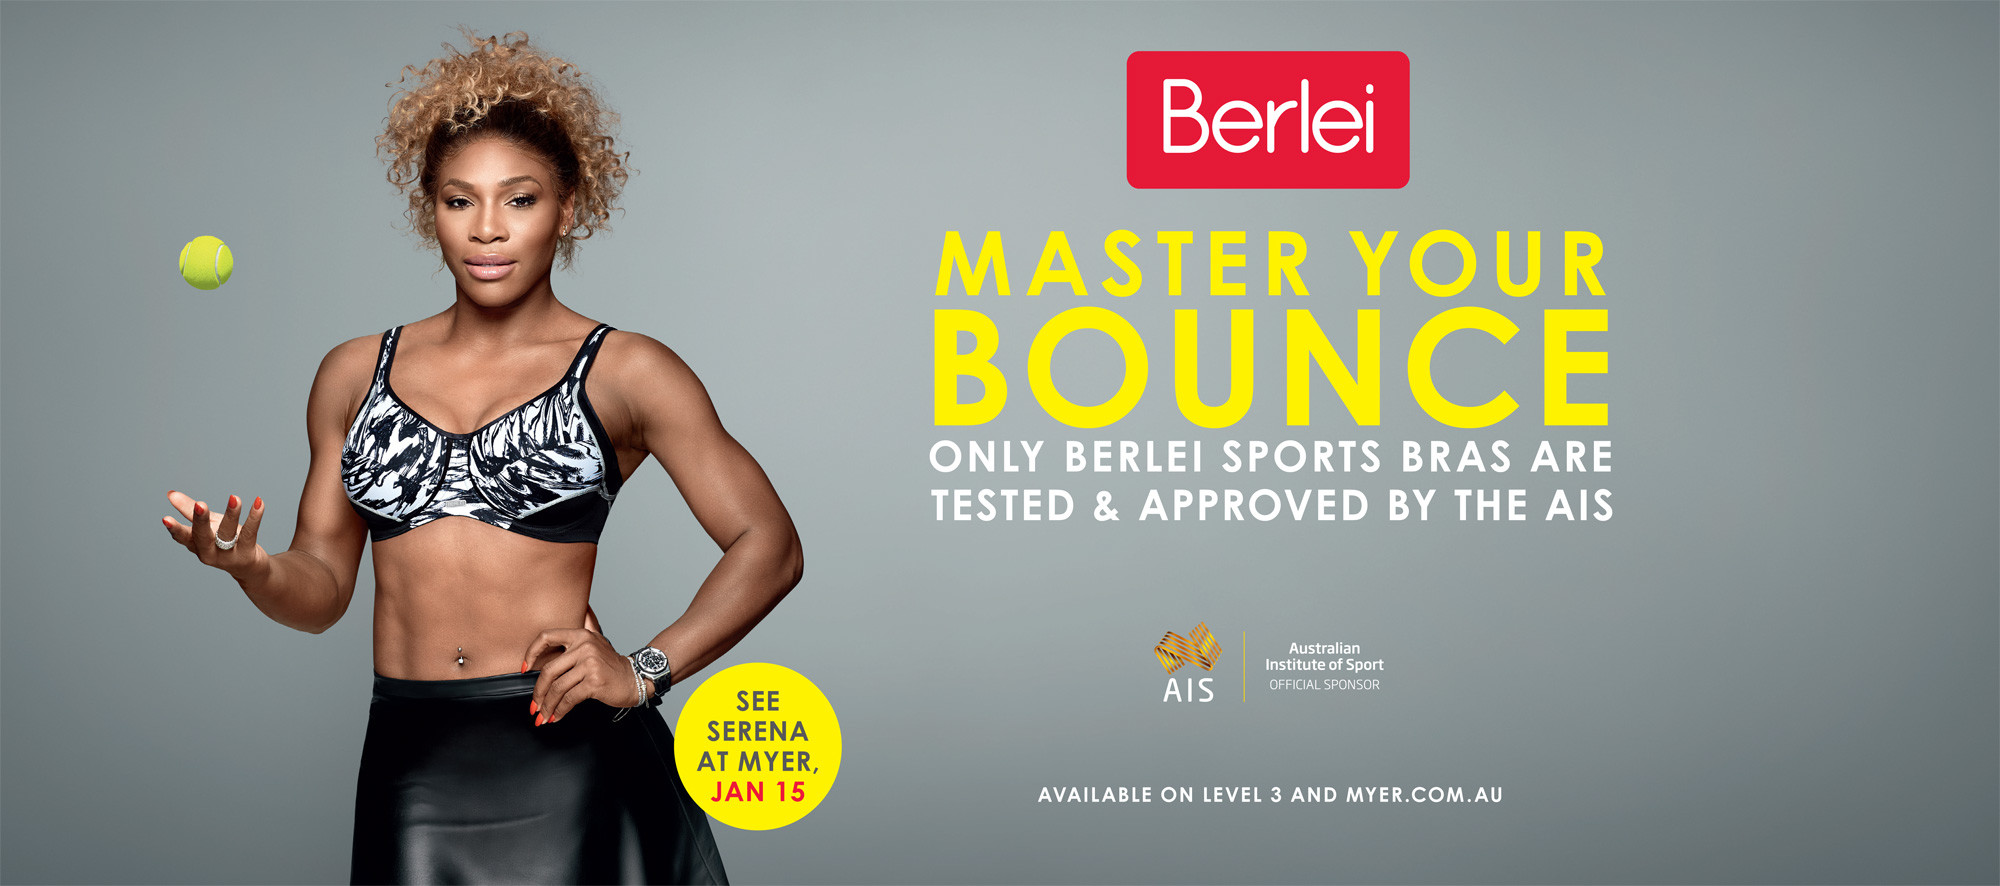 Serena Williams - Berlei